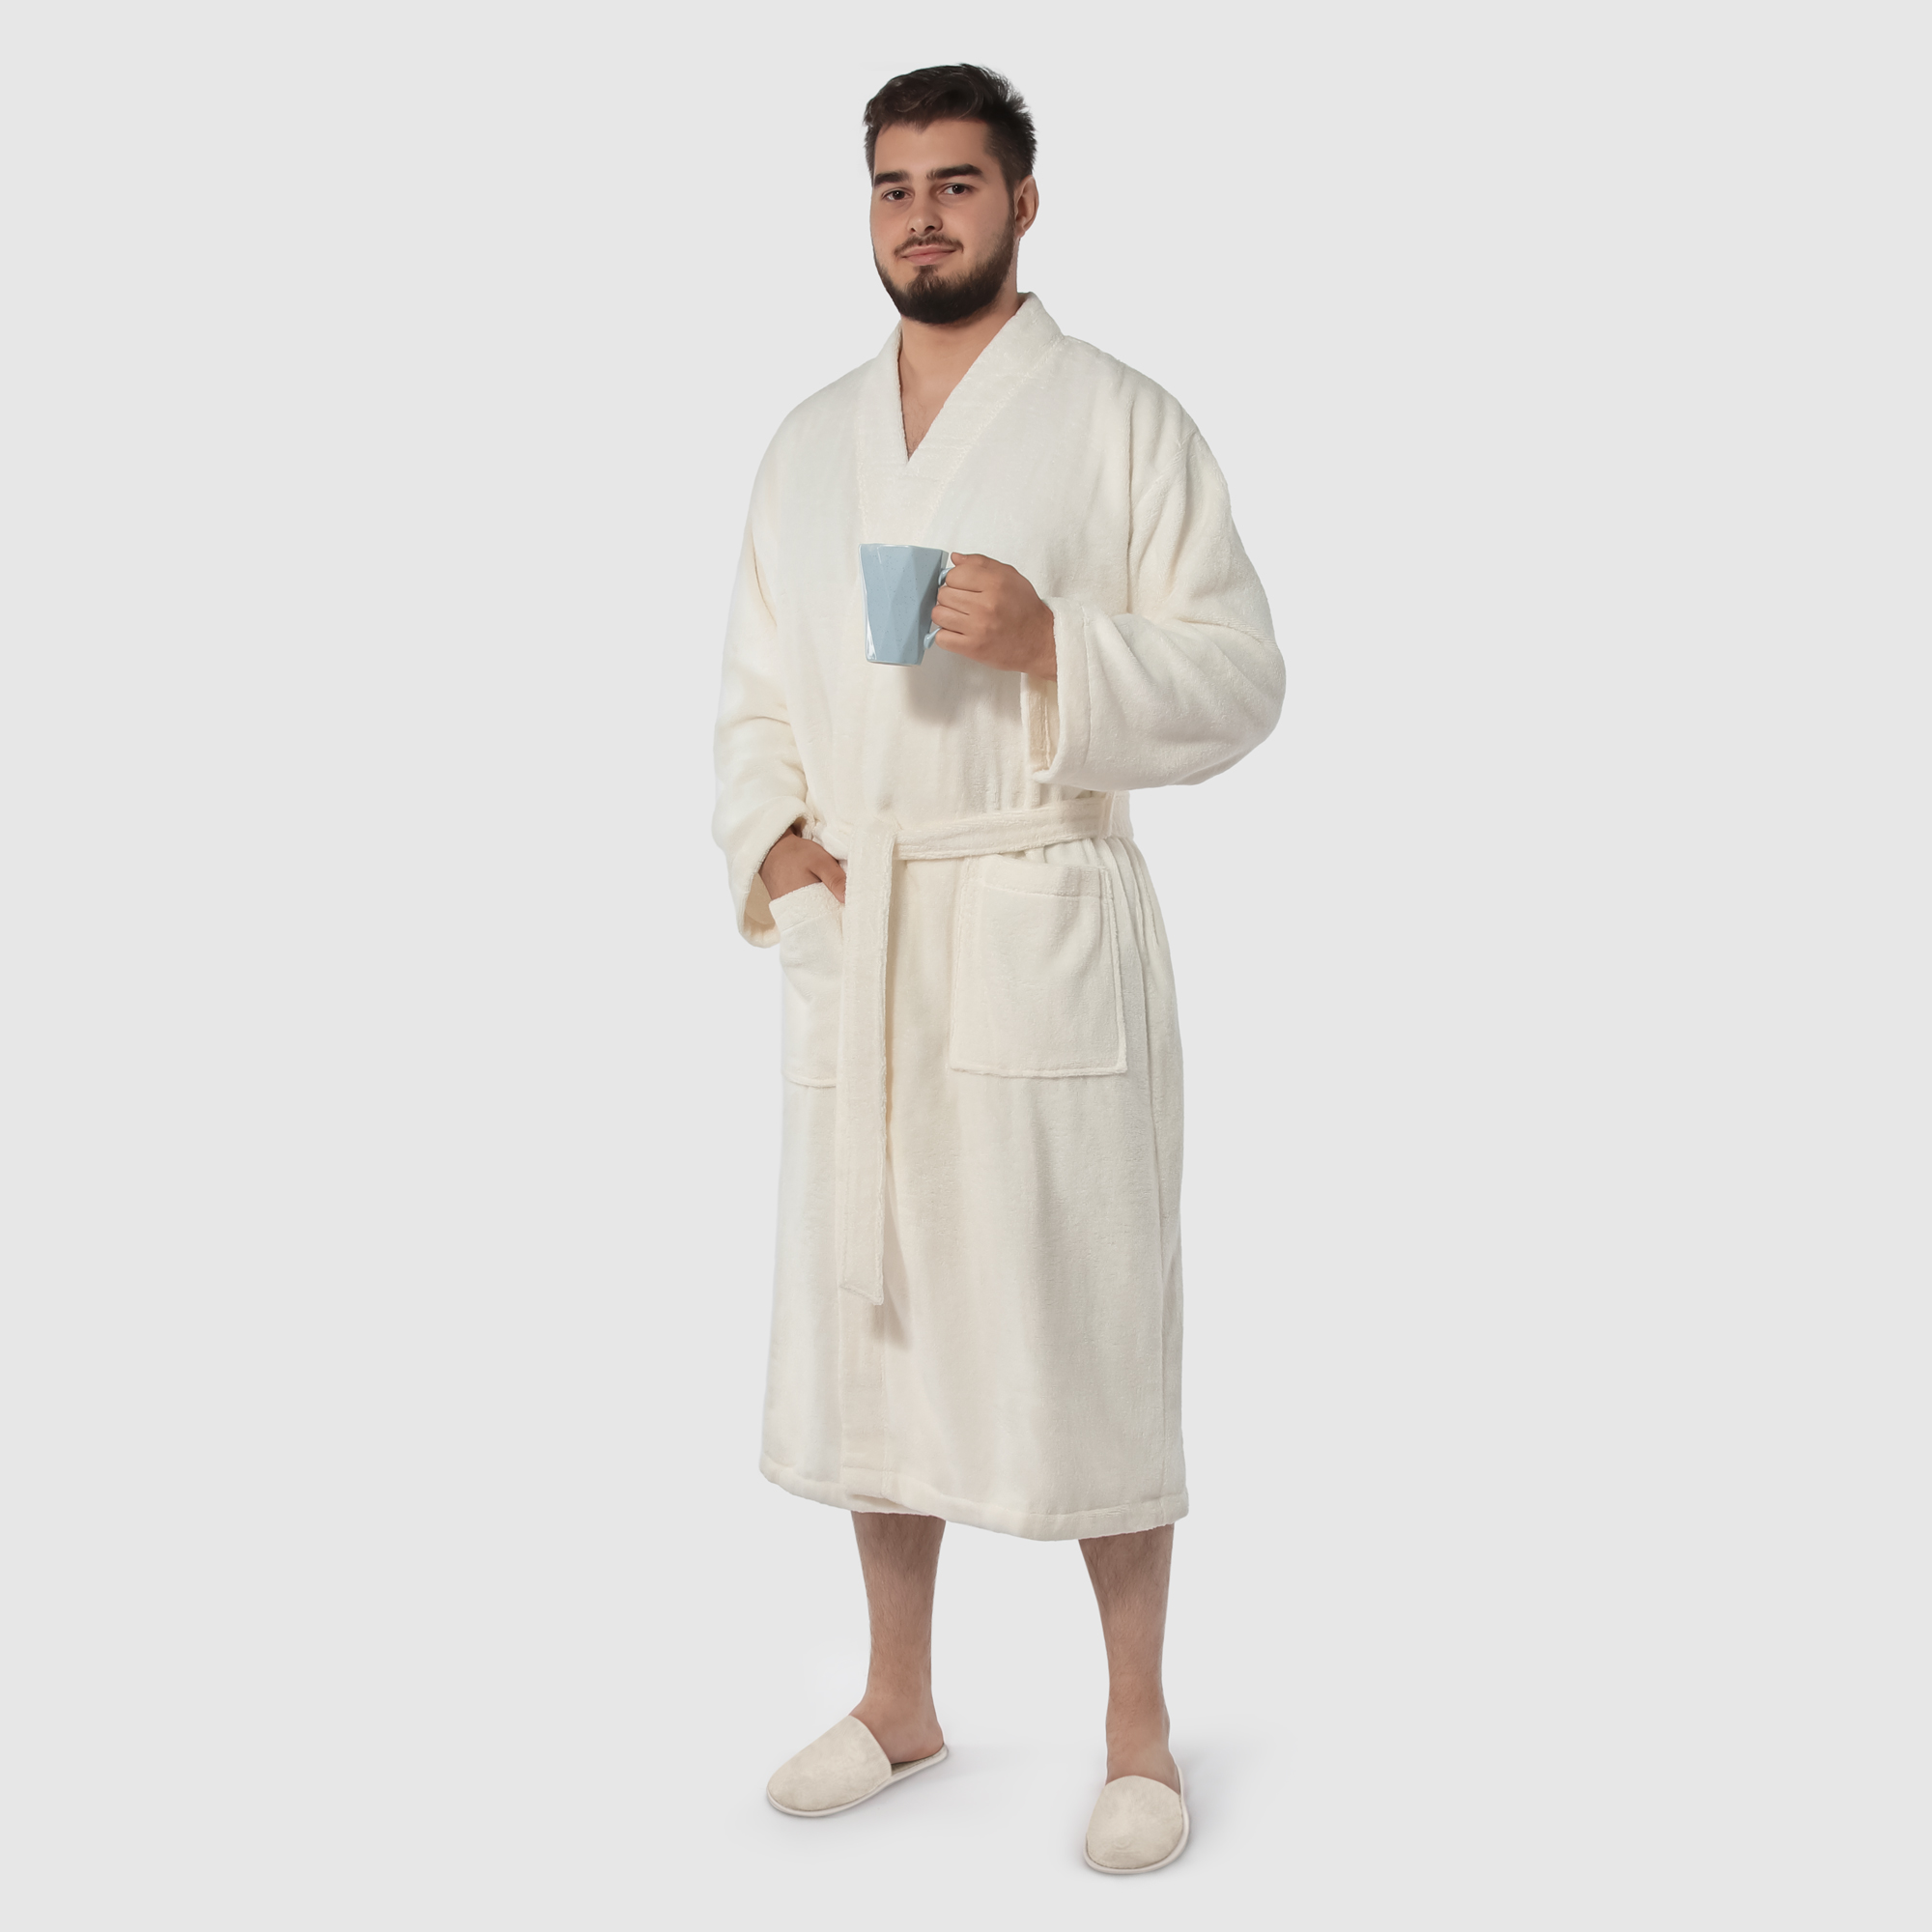 Мужской халат Maisonette Parla кремовый XL халат мужской asil sauna brown xxl вафельный с капюшоном